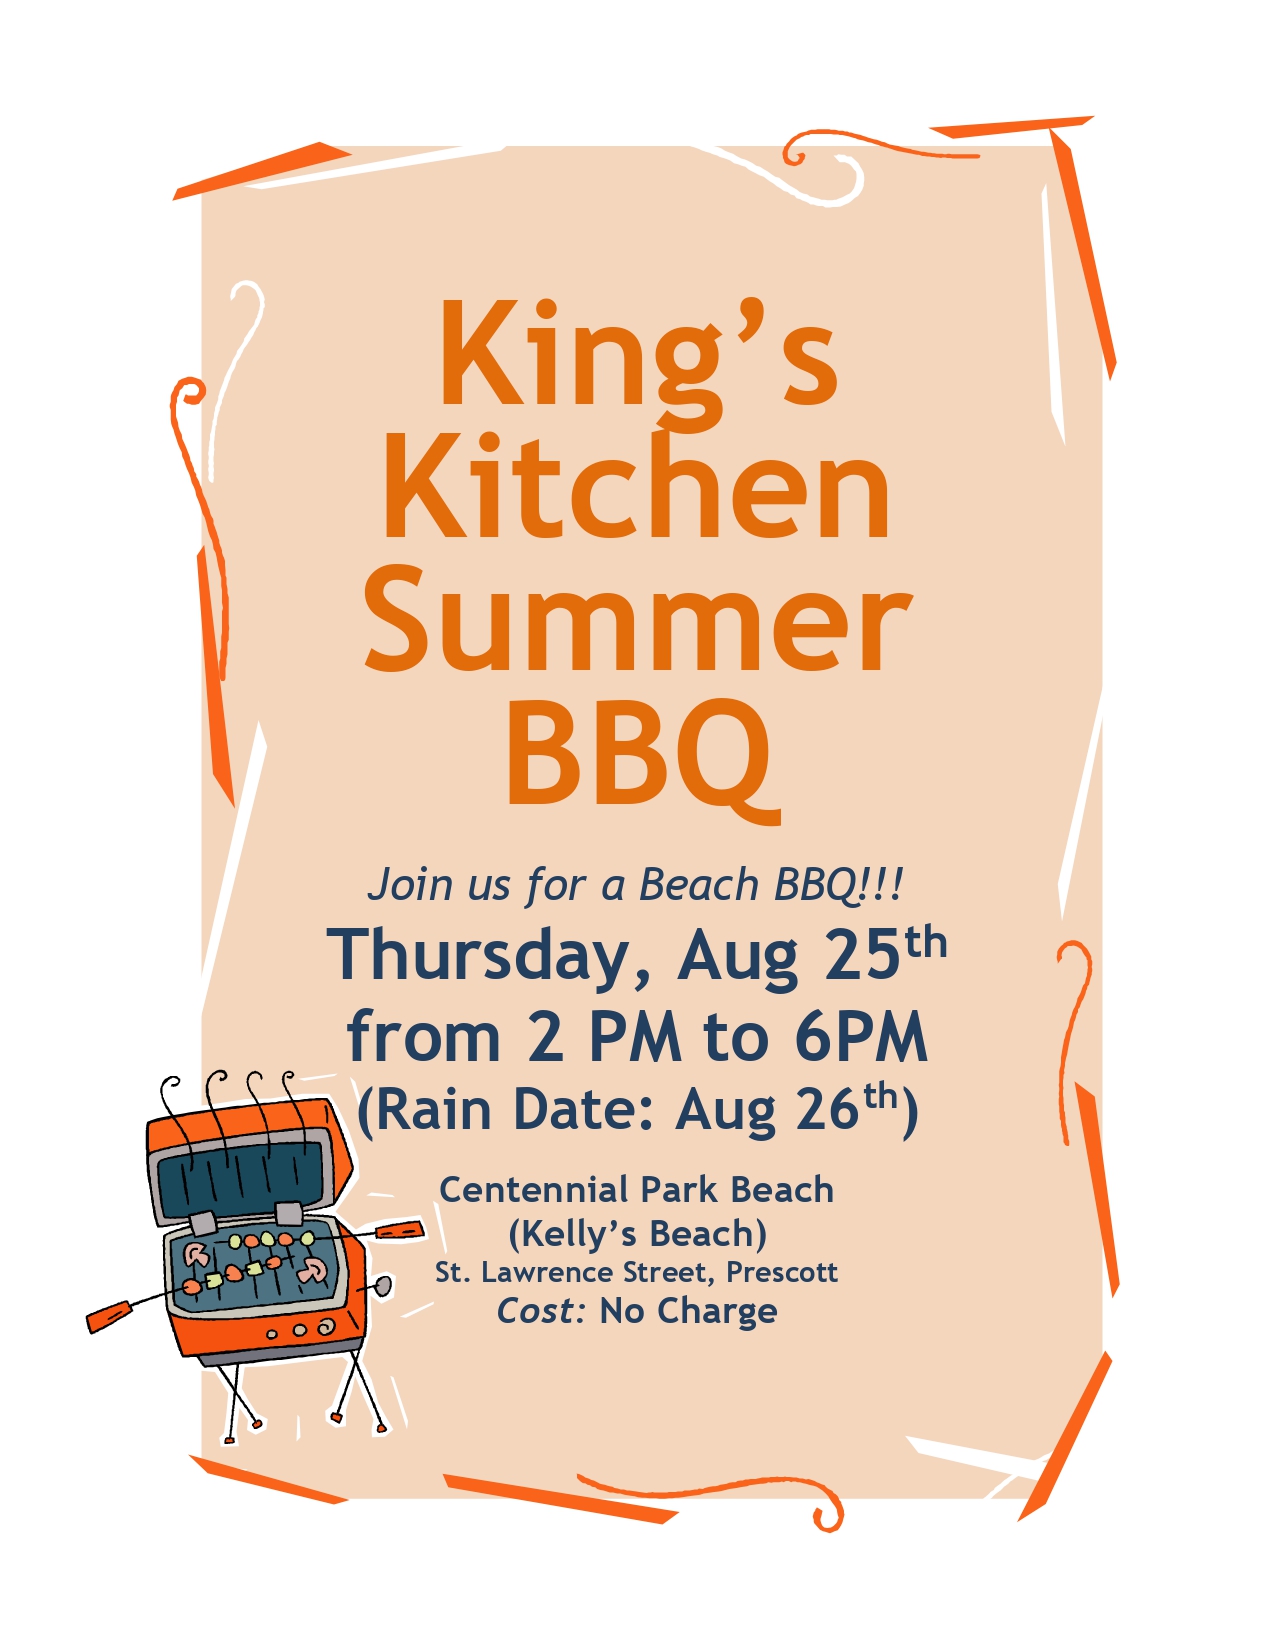 King's Kitchen Summer BBQ